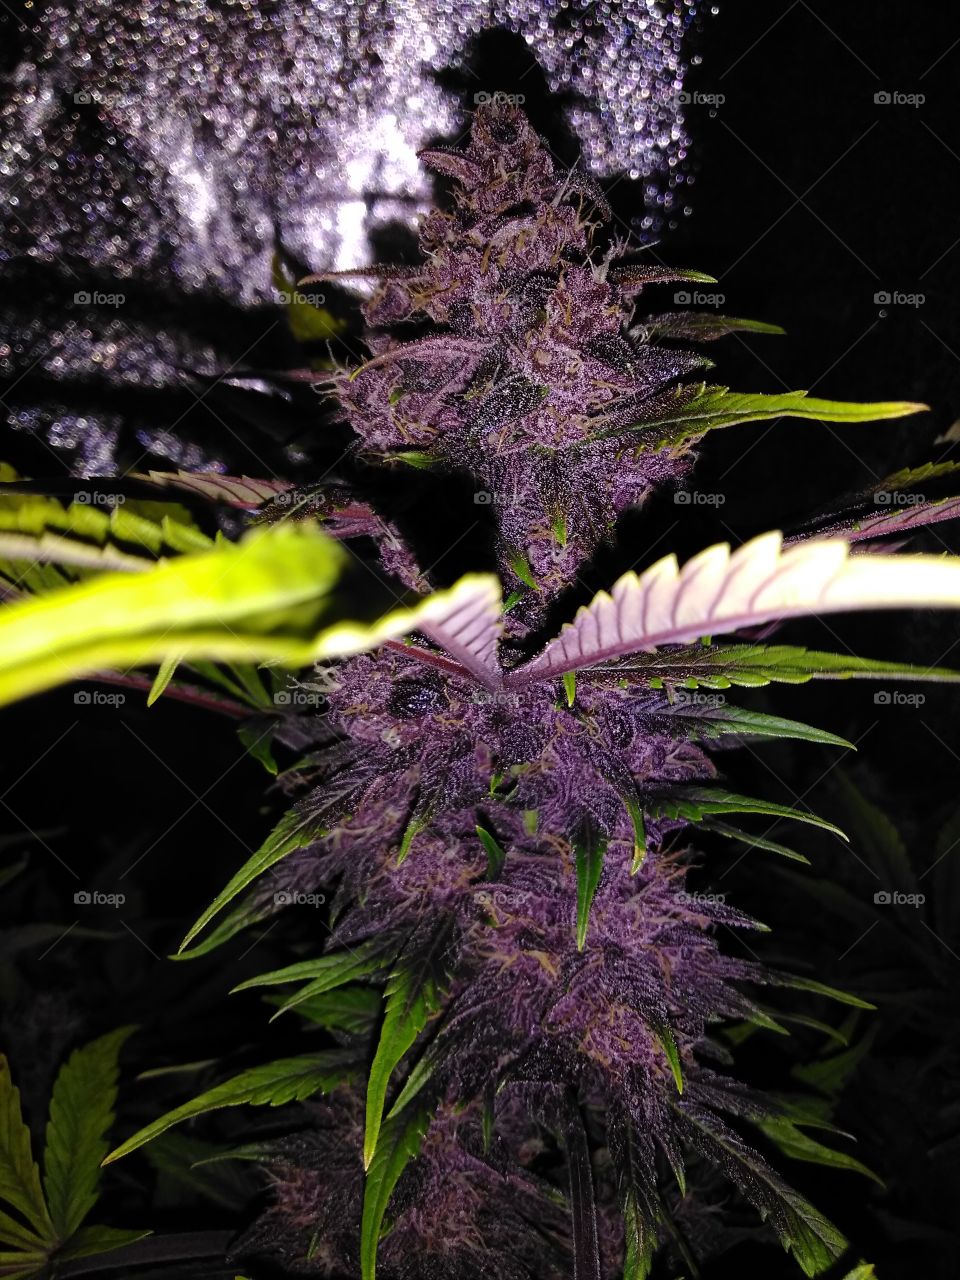 dark purple cannabis flower